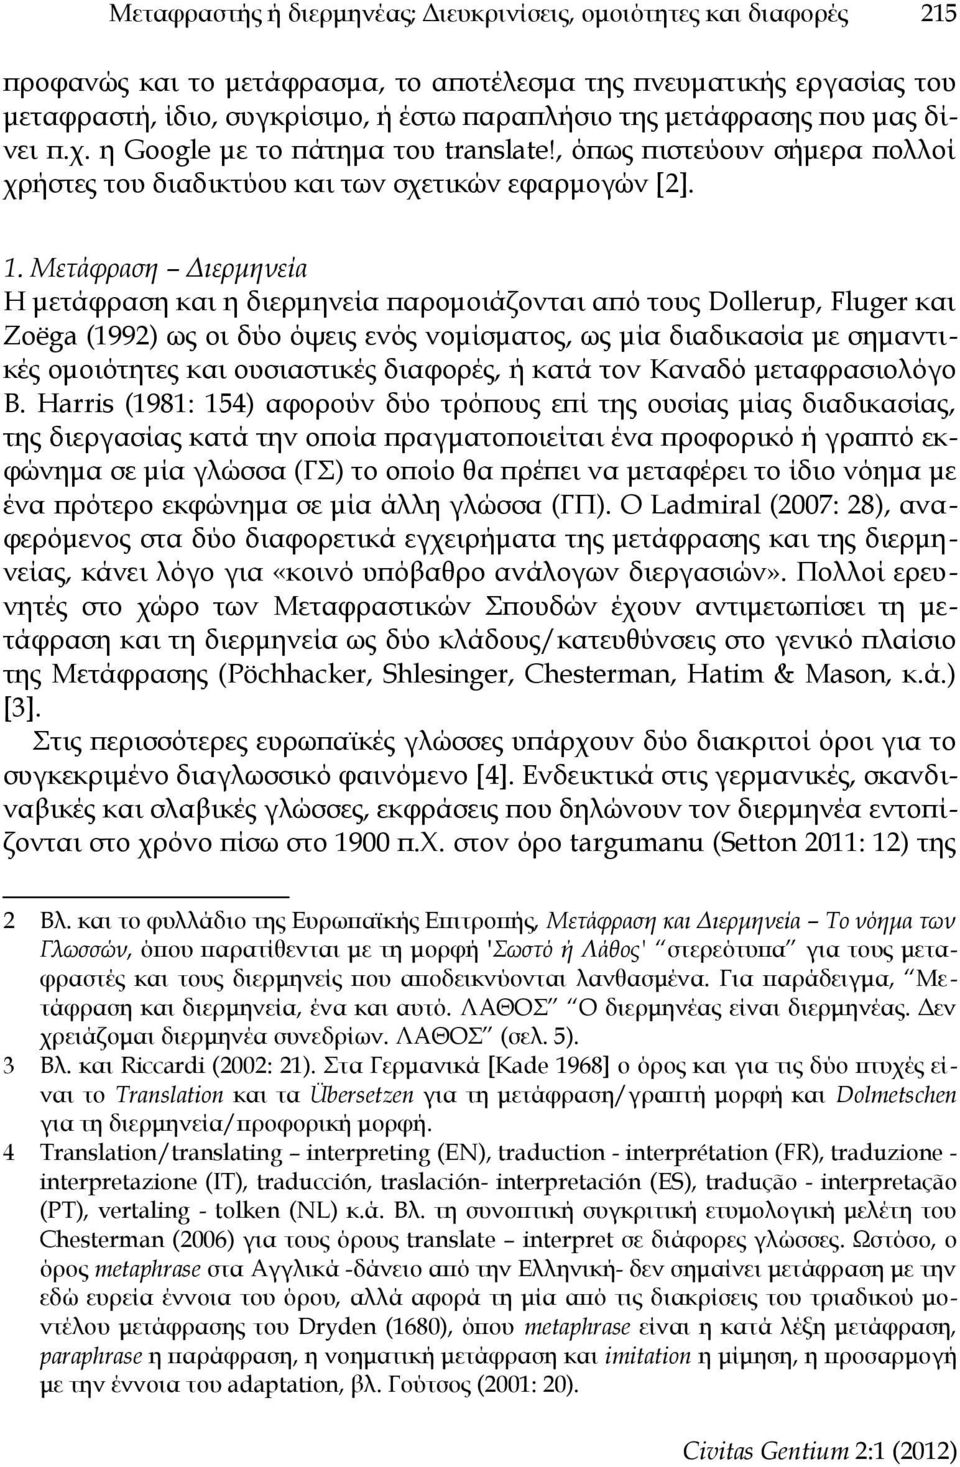 Μετάφραση Διερμηνεία Η μετάφραση και η διερμηνεία παρομοιάζονται από τους Dollerup, Fluger και Zoëga (1992) ως οι δύο όψεις ενός νομίσματος, ως μία διαδικασία με σημαντικές ομοιότητες και ουσιαστικές